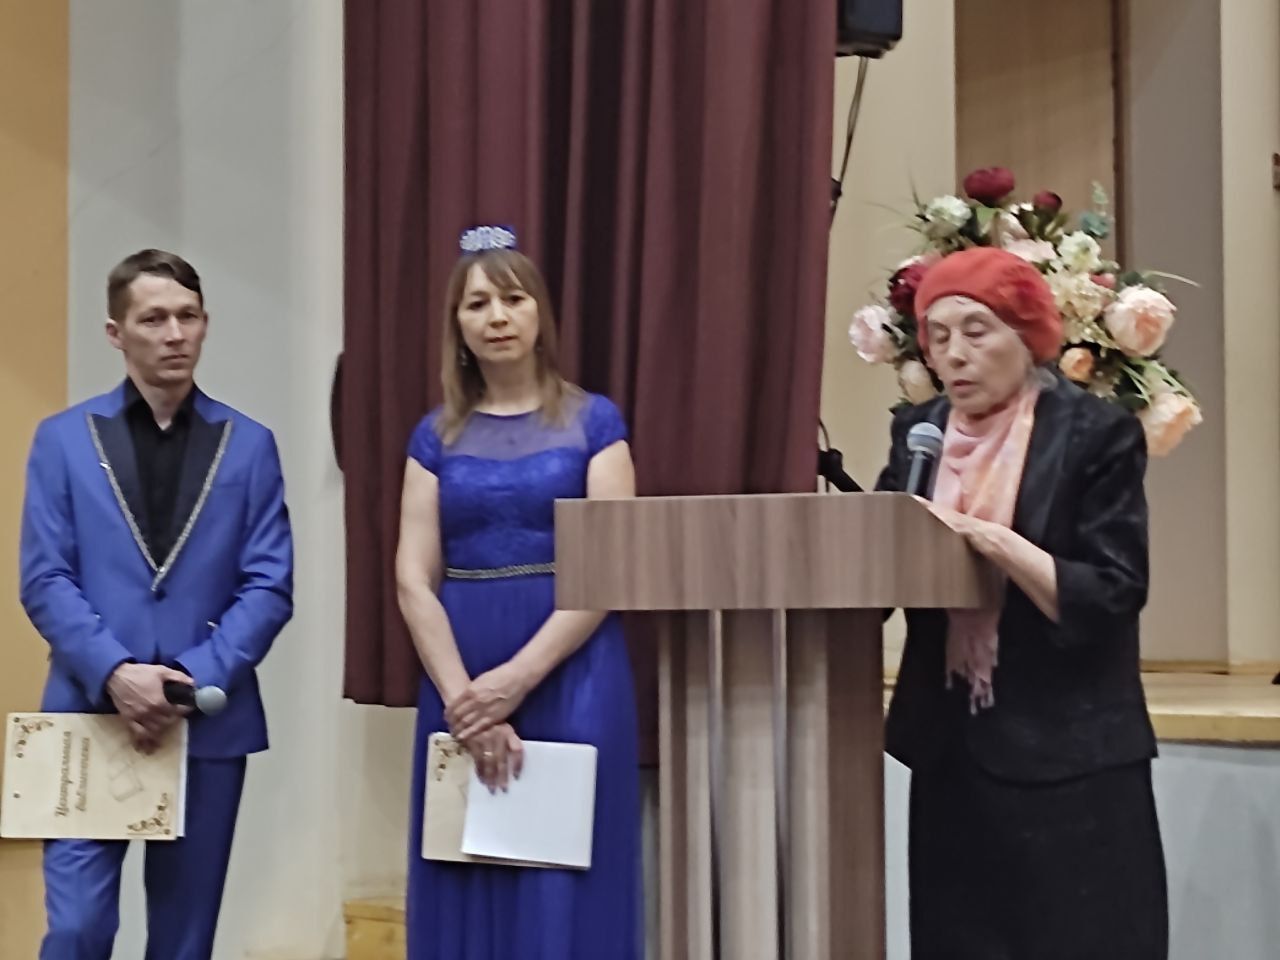 В Азнакаево состоялось торжественное открытие памятной доски на фасаде дома, где жил Нур Ахмадиев